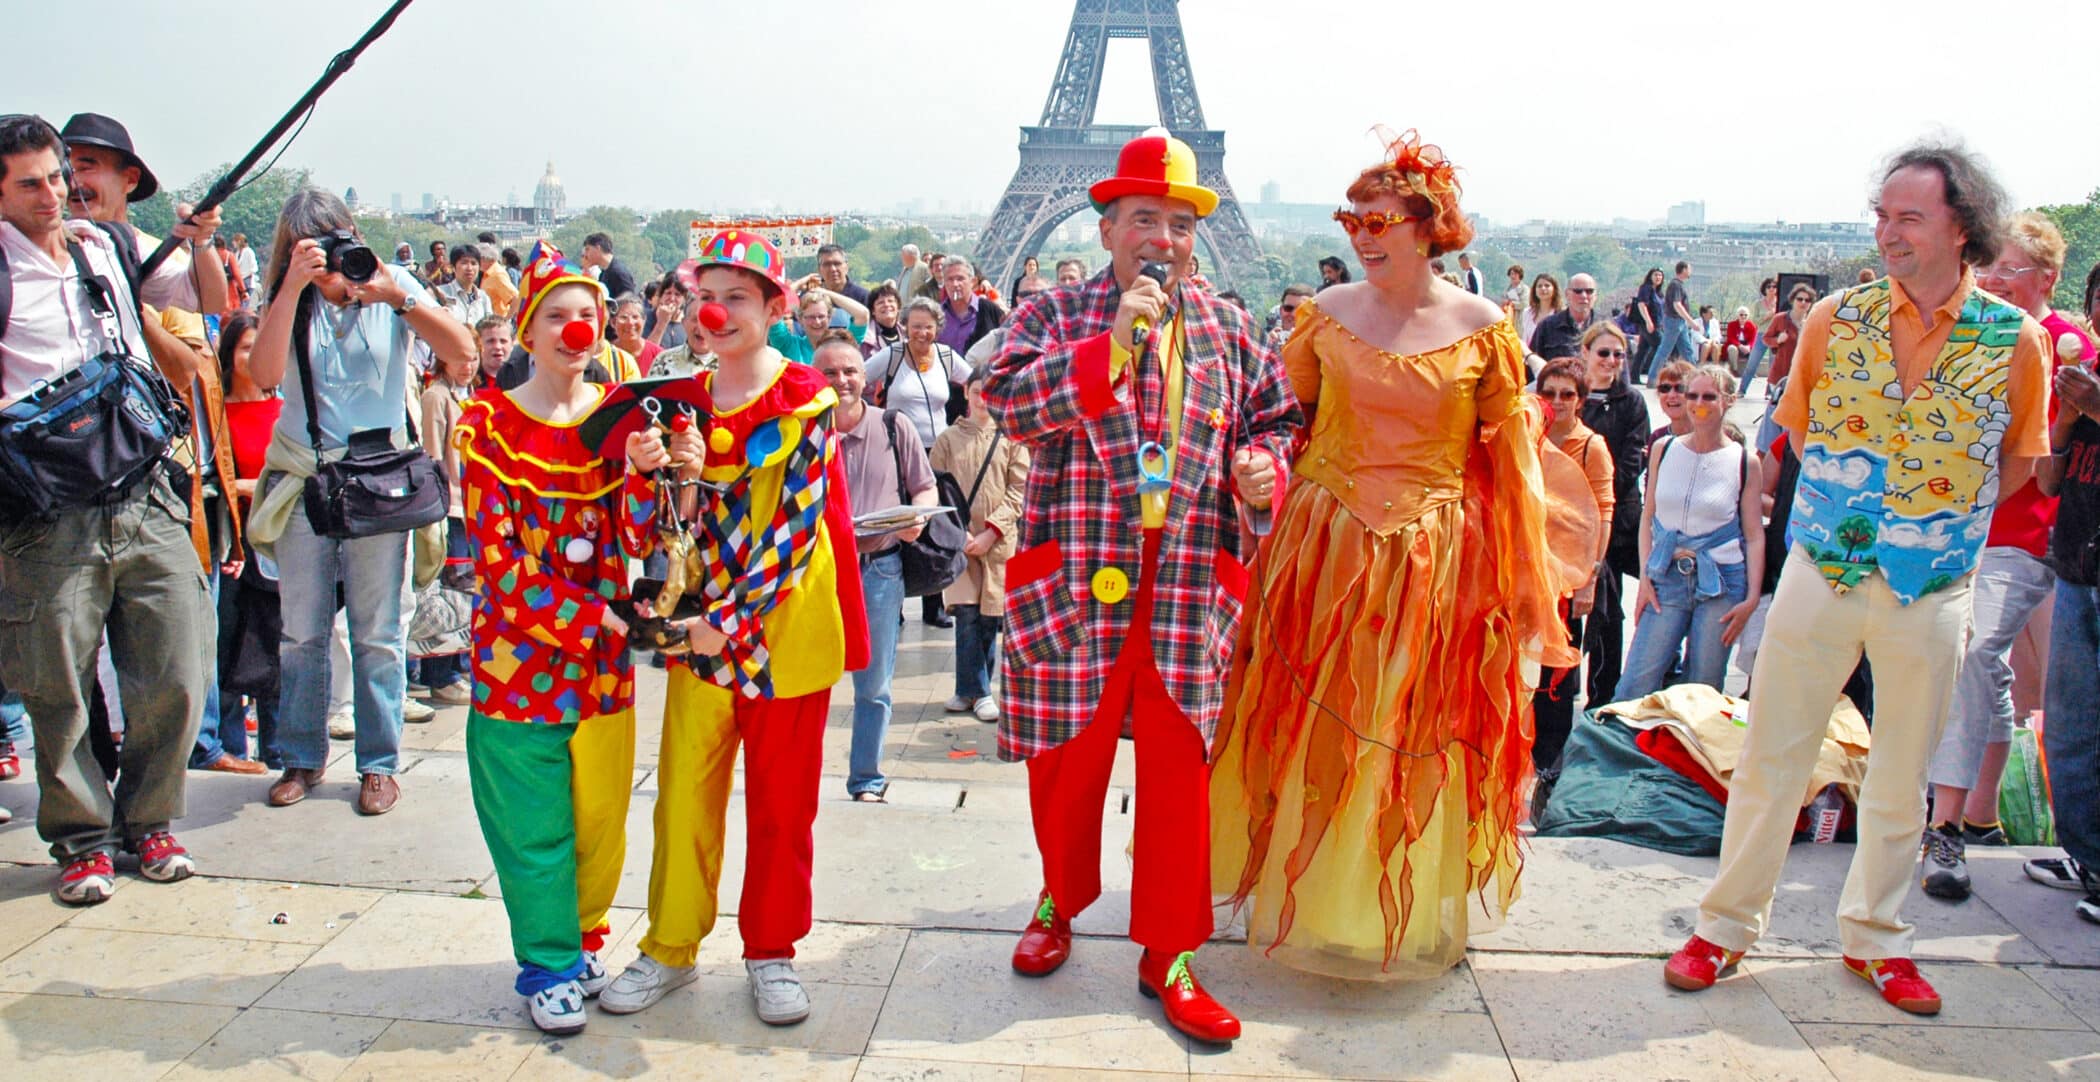 Remise du Rire d'or à Kinou le Clown par Corinne Cosseron devant la Tour Eiffel Journée Mondiale du Rire 2006